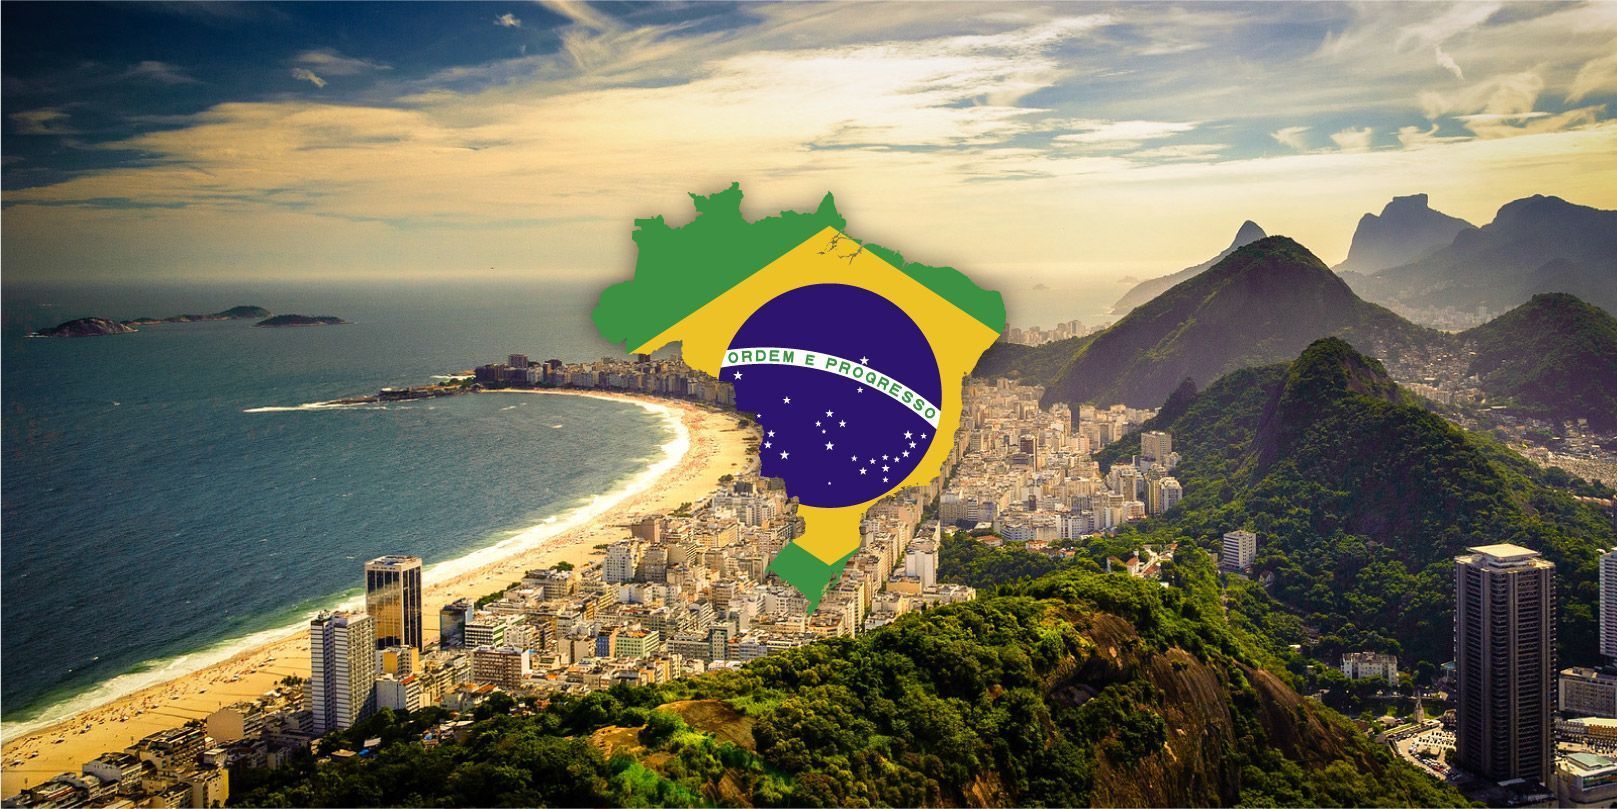 Brazil2019